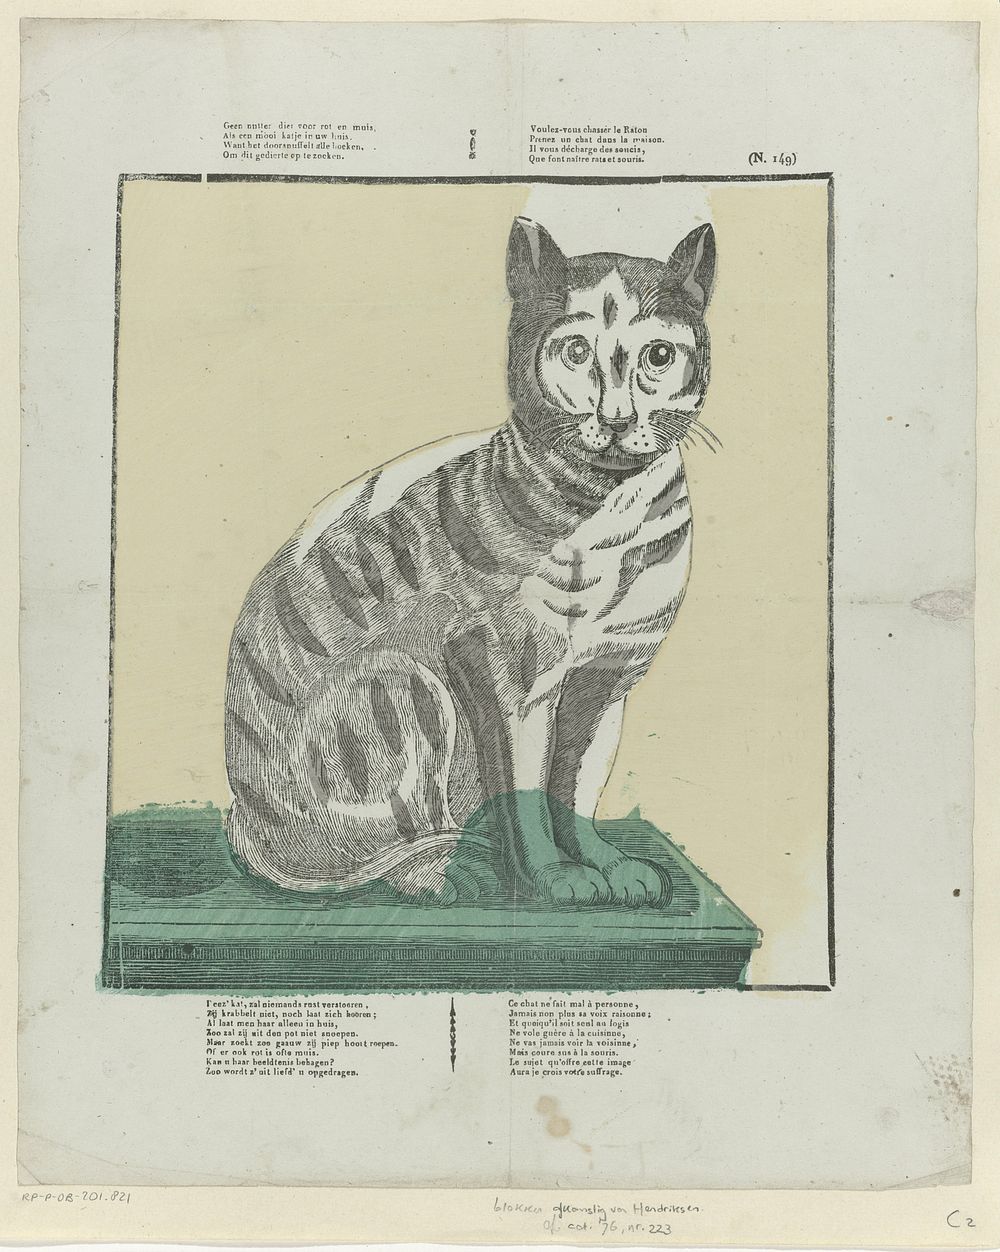 Geen nutter dier voor rot en muis, / Als een mooi katje in uw huis [(...)] (1800 - 1833) by Philippus Jacobus Brepols and…